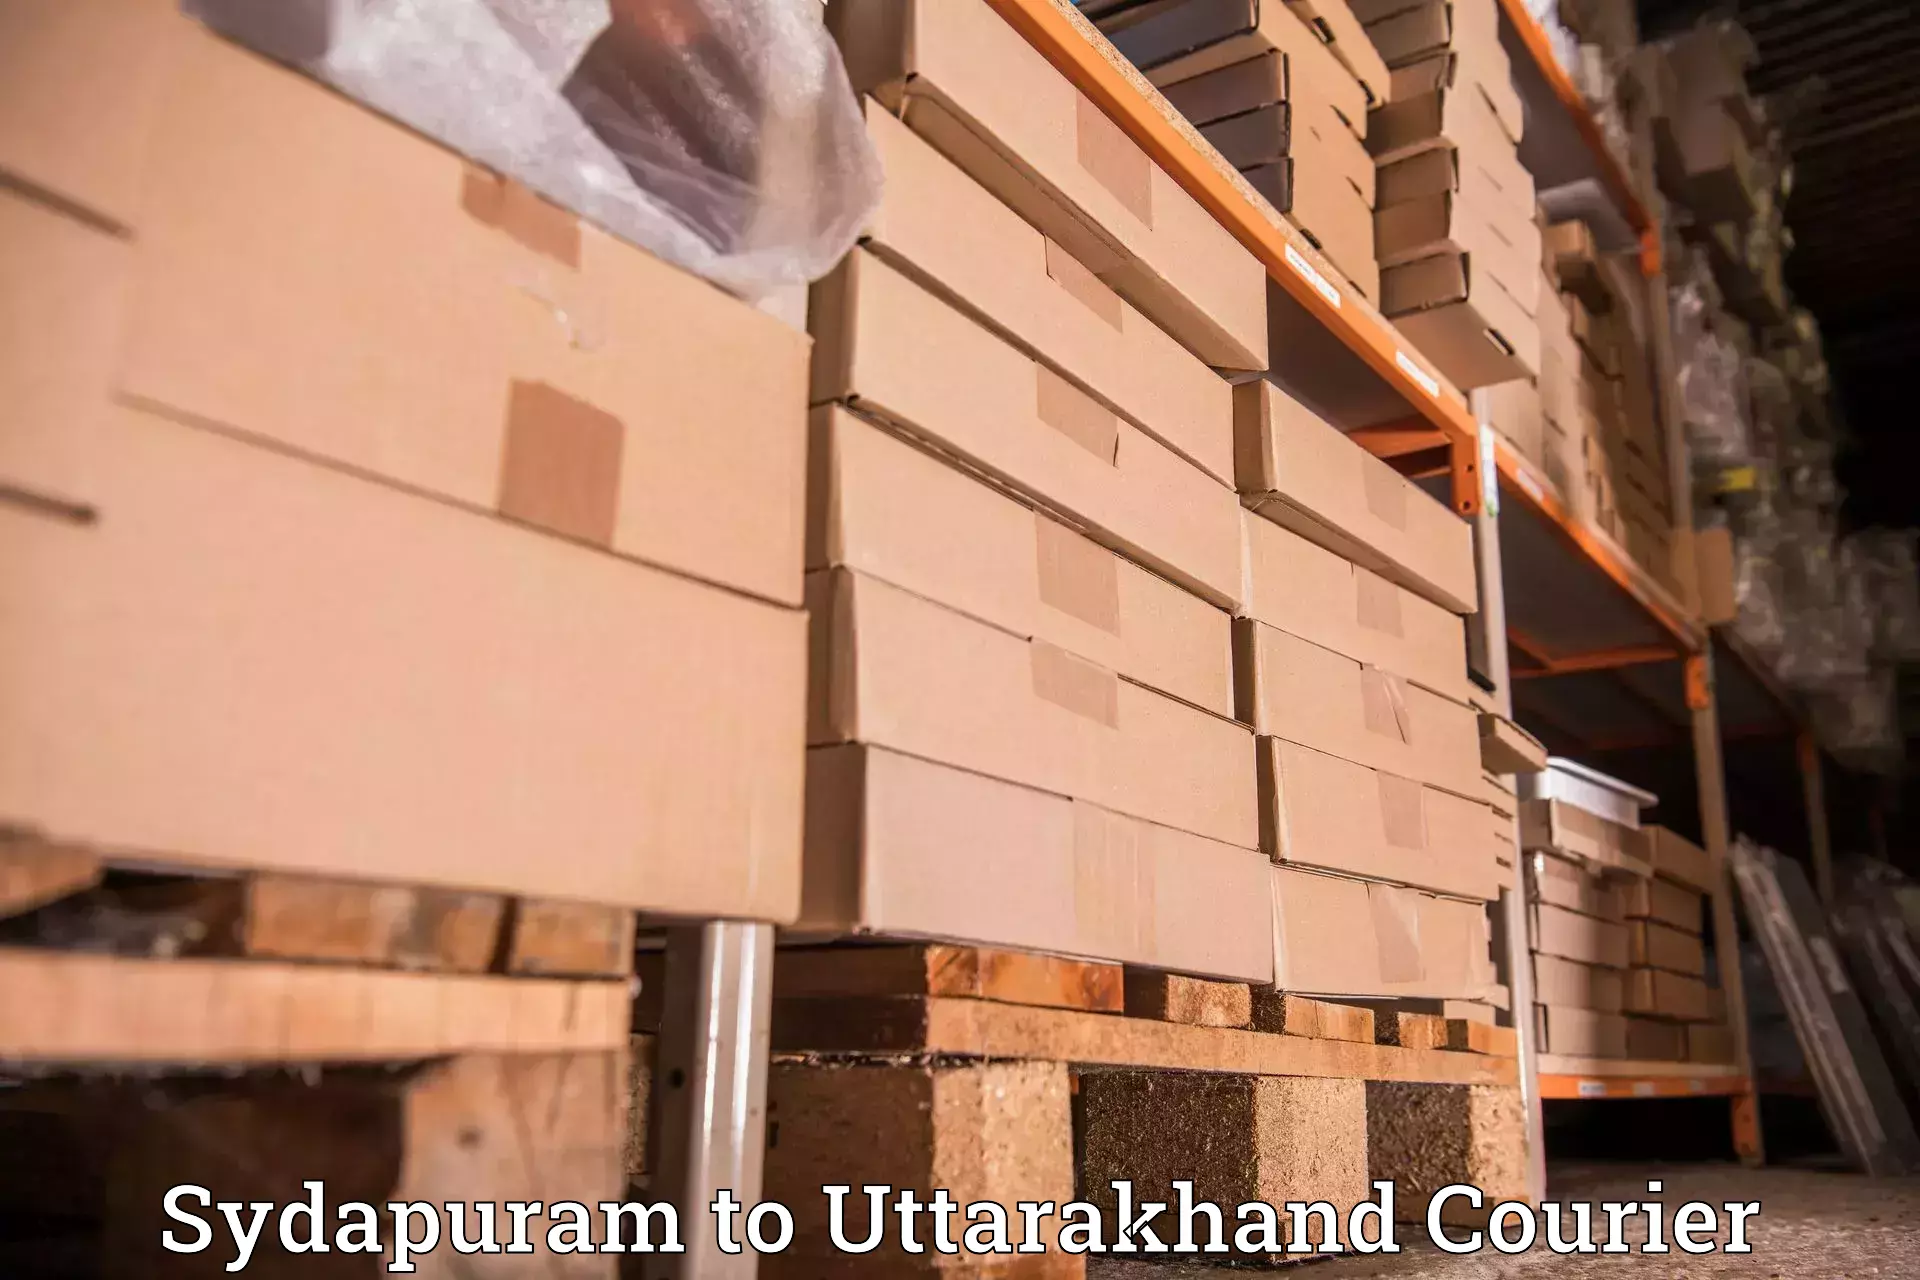 Urban courier service Sydapuram to Haldwani